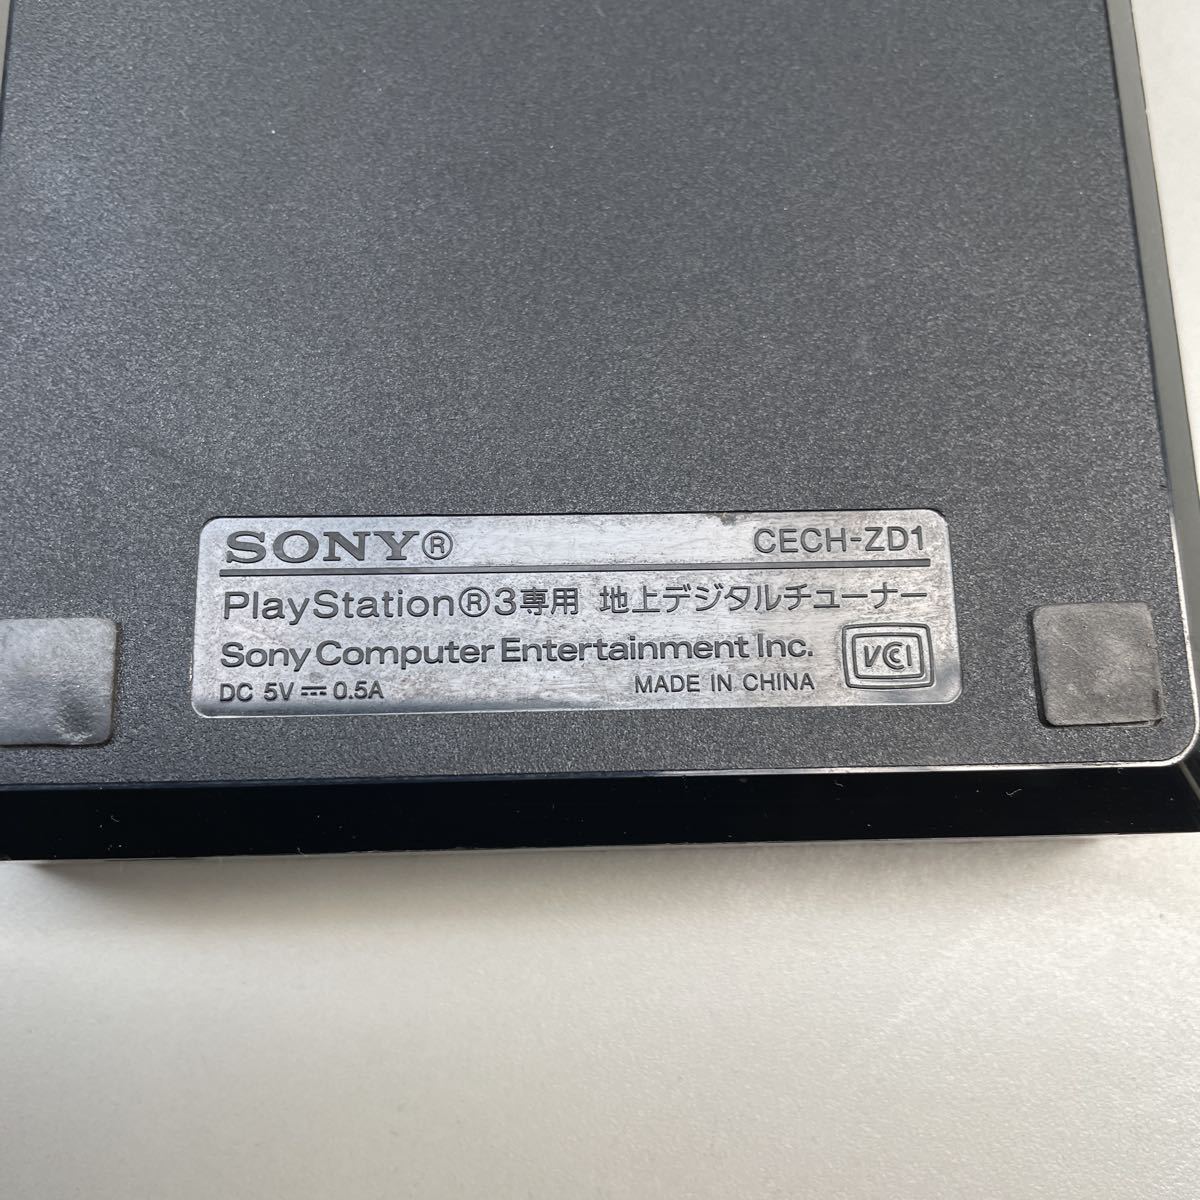 SONY Sony Play Station 3 специальный наземный цифровой тюнер корпус номер образца CECH-ZD1 электризация работоспособность не проверялась б/у Junk 